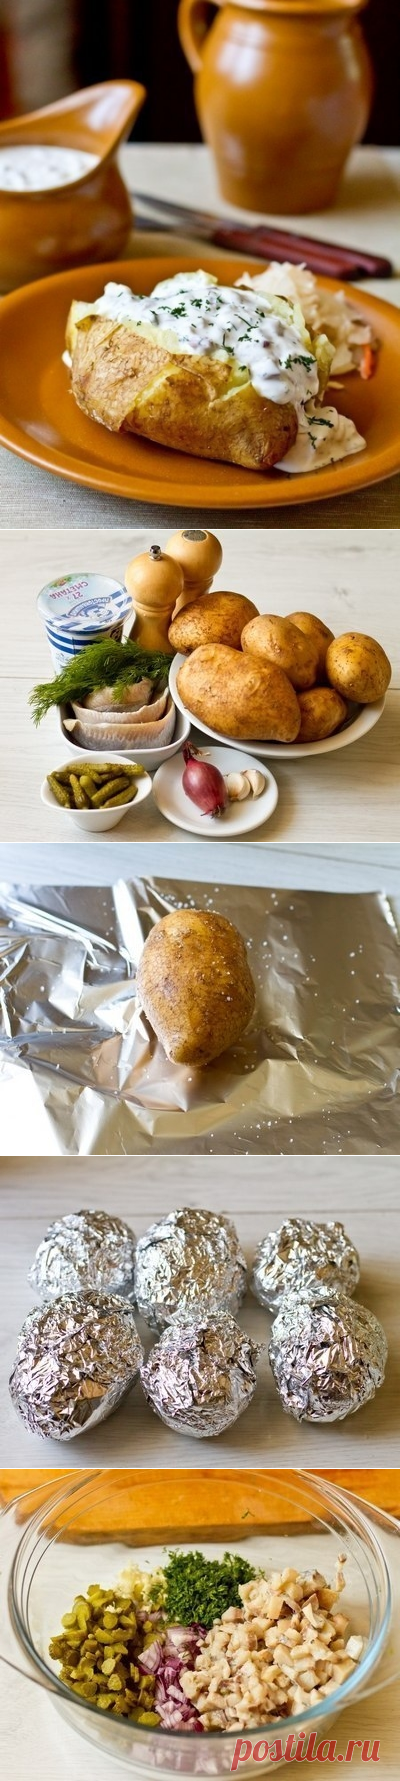 Как приготовить печеный картофель с селедочным соусом - рецепт, ингридиенты и фотографии